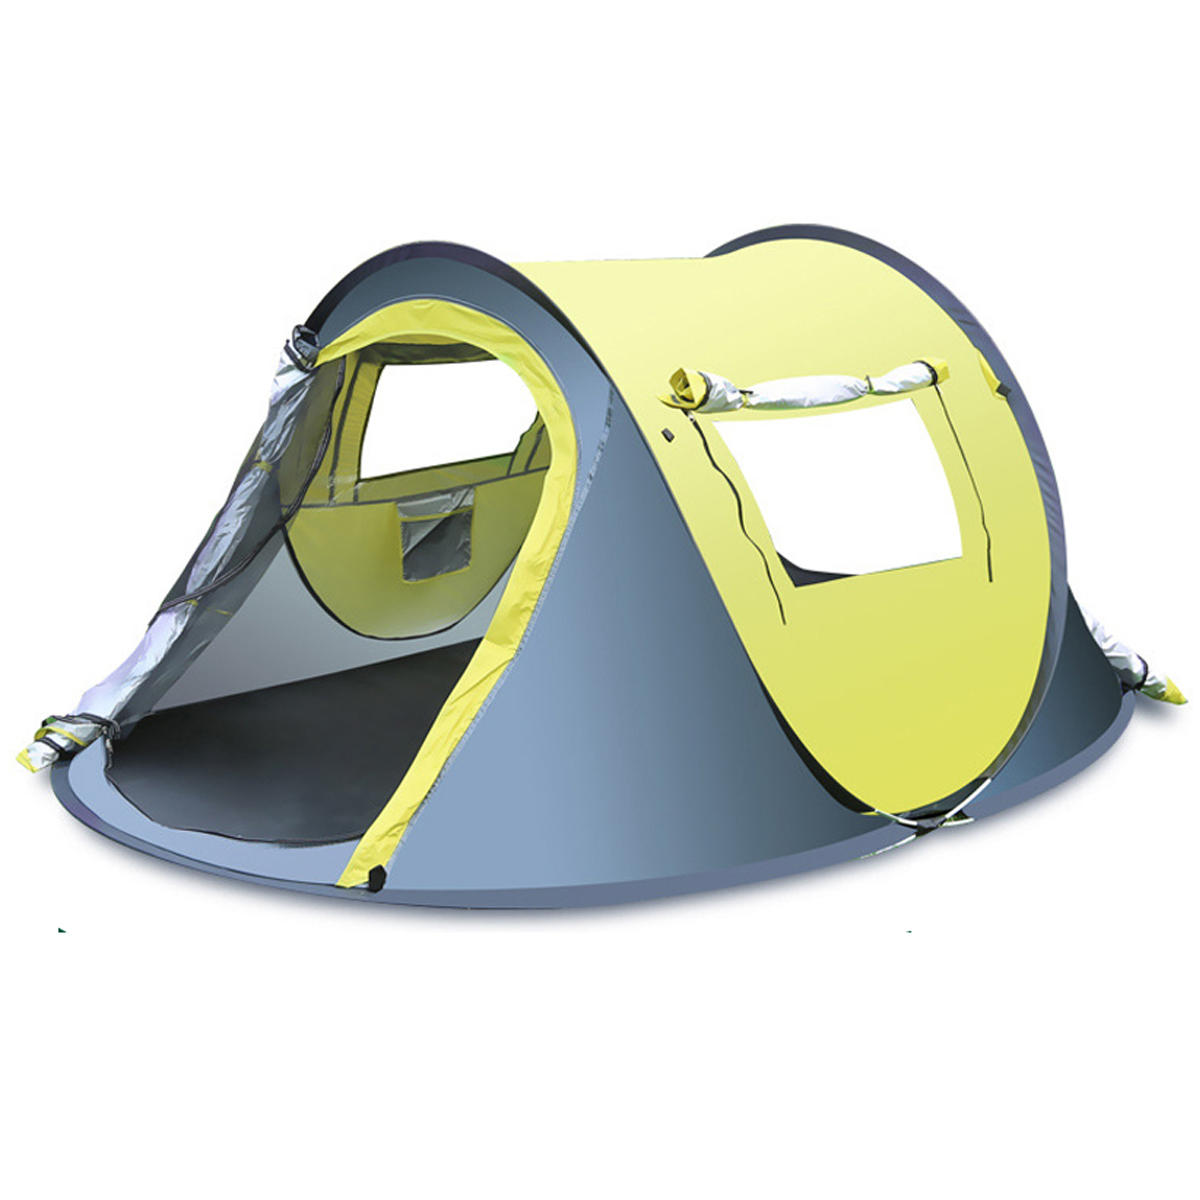 Snel opklapbare tent voor 3-4 personen voor buitenactiviteiten, waterdicht en regenbestendig, met zonnescherm, ideaal voor kamperen en wandelen.